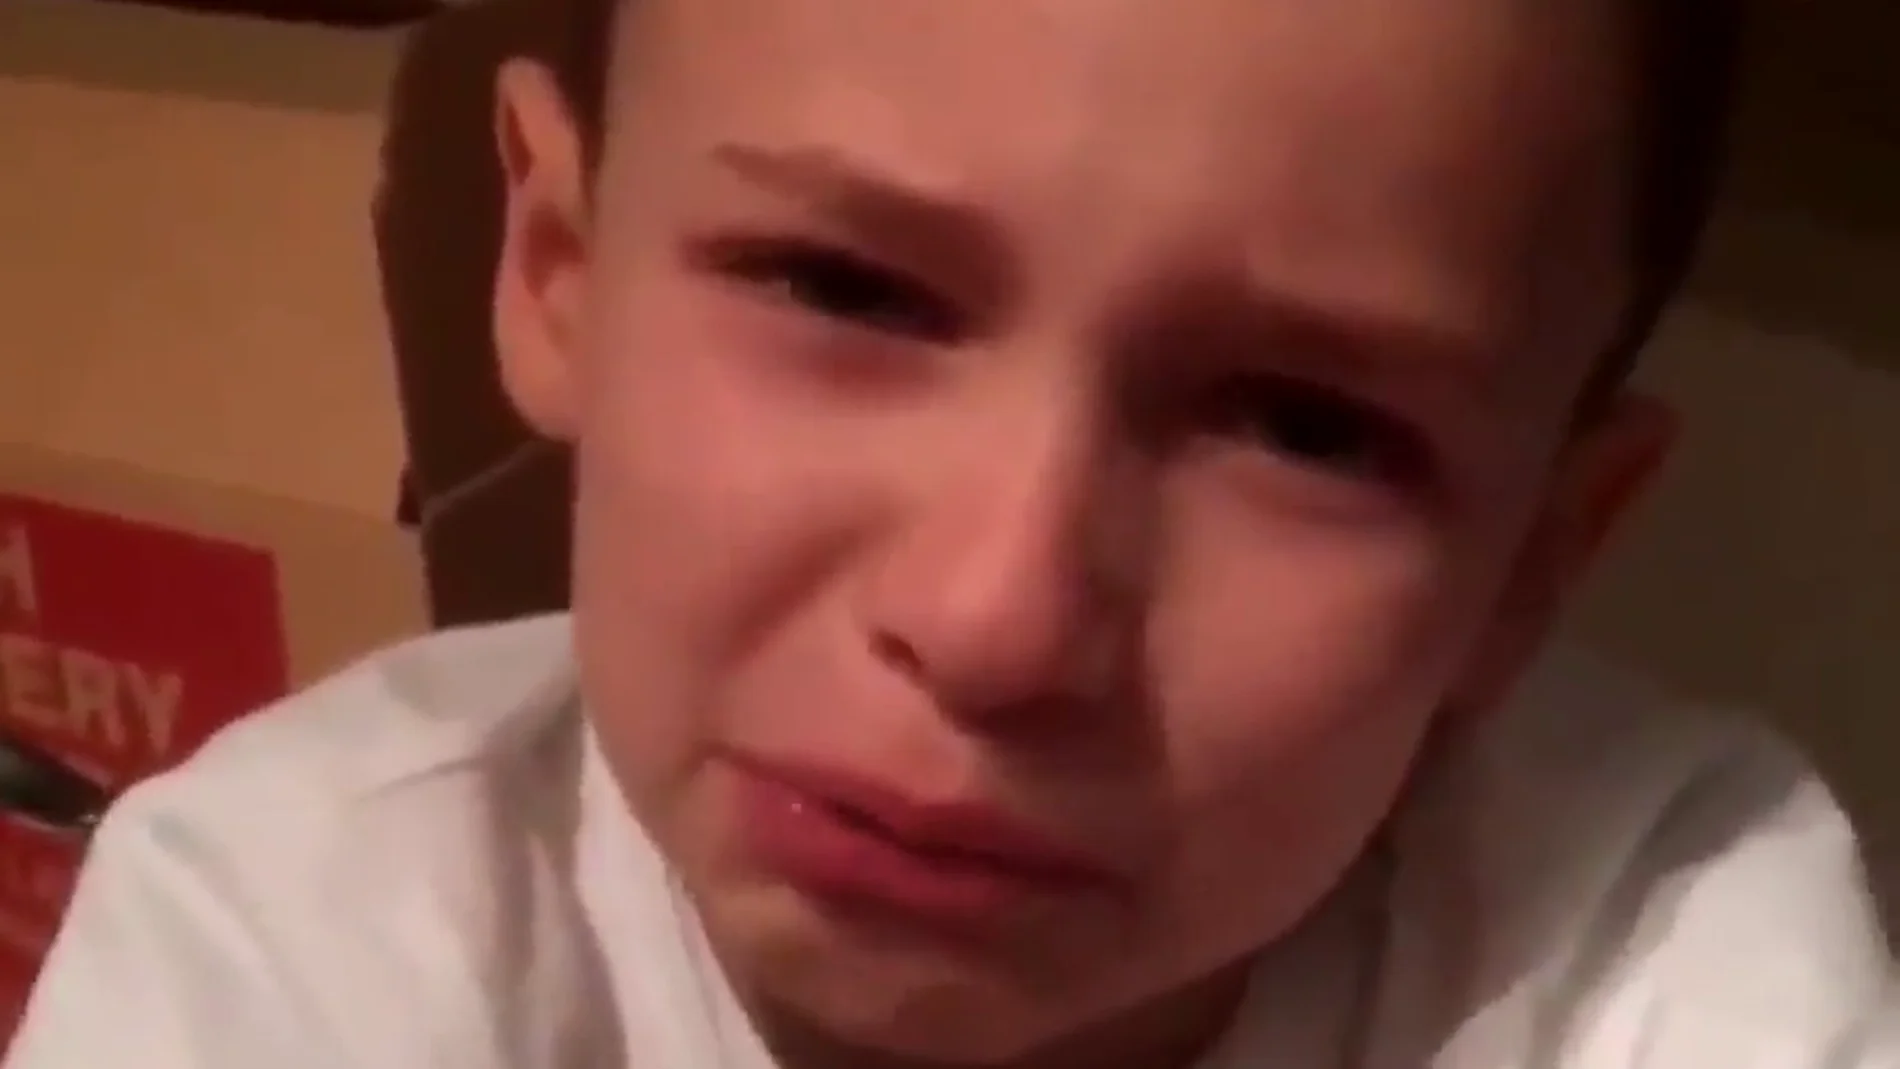 Un niño de siete años relata el bullying que sufre a diario: "quiero unirme a Dios"